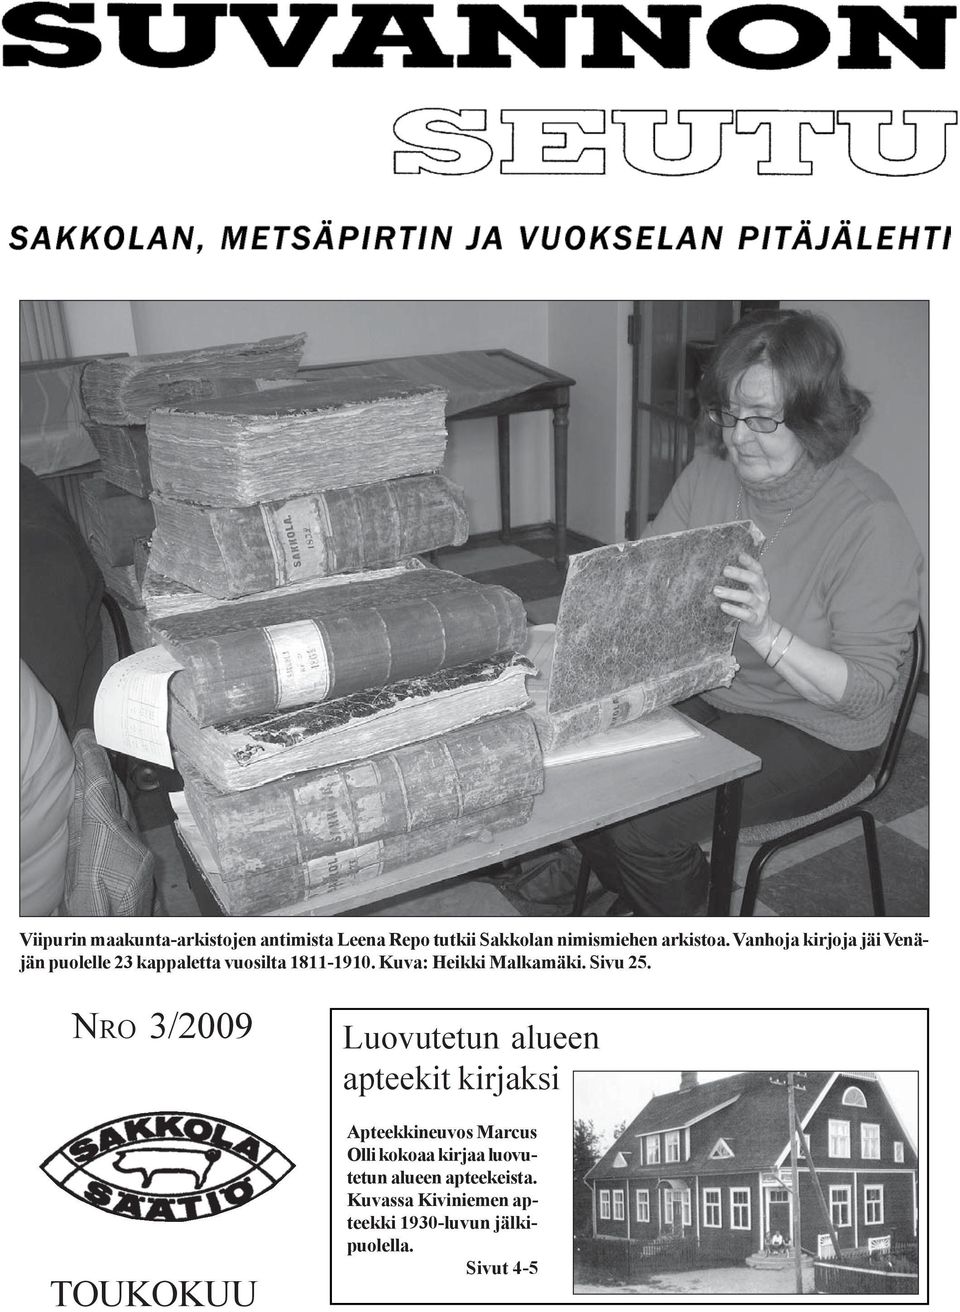 Vanhoja kirjoja jäi Venäjän puolelle 23 kappaletta vuosilta 1811-1910. Kuva: Heikki Malkamäki. Sivu 25.